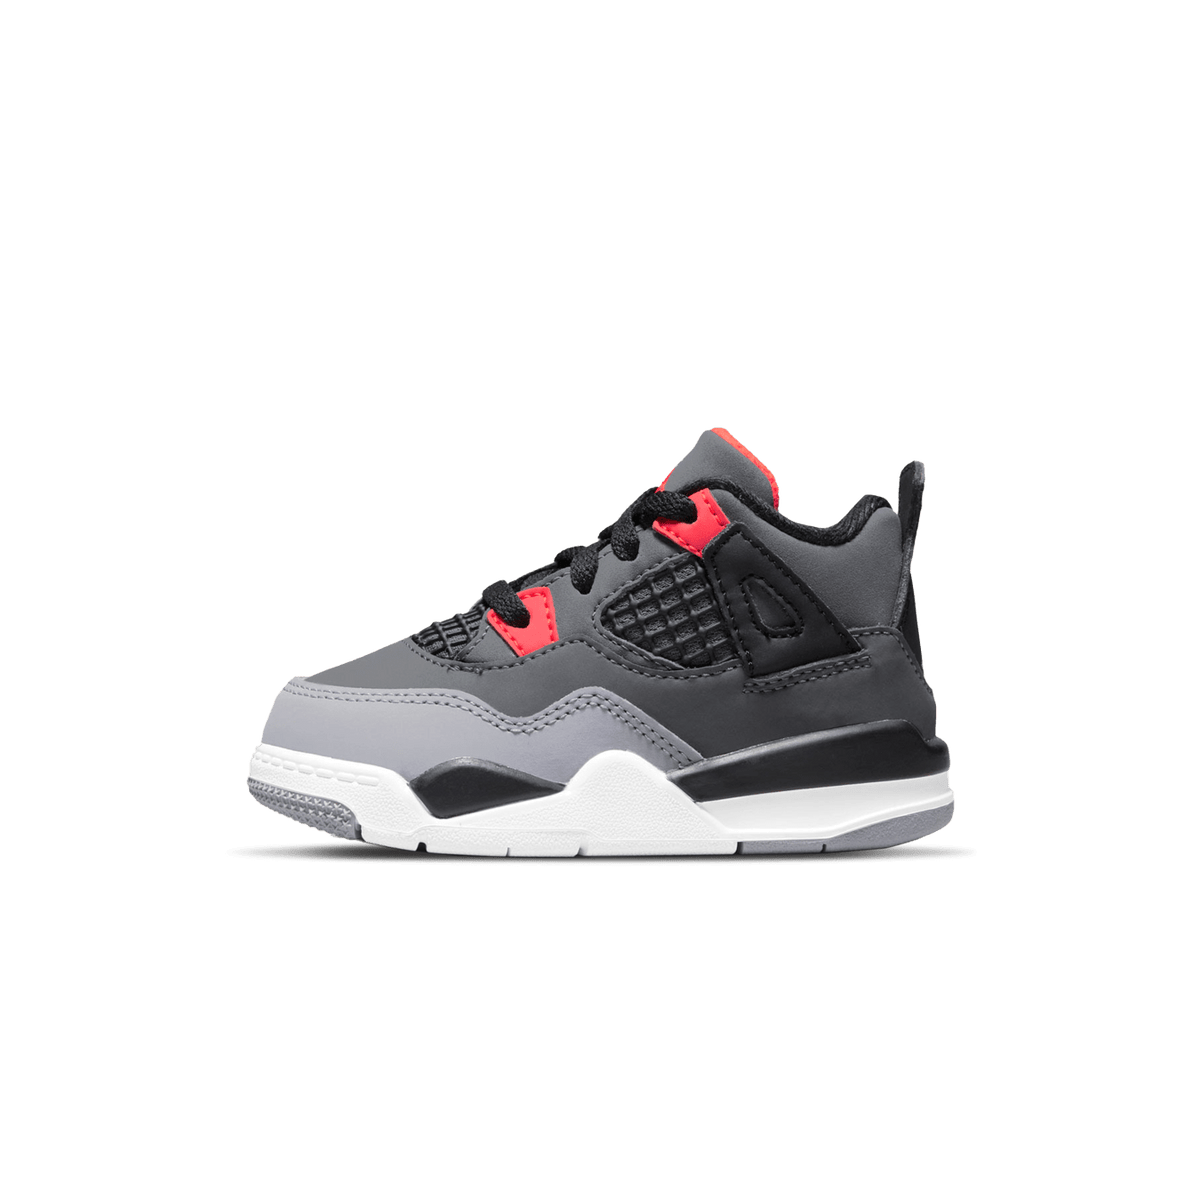 Air Jordan 4 Retro TD 'Infrared' - Kick Game